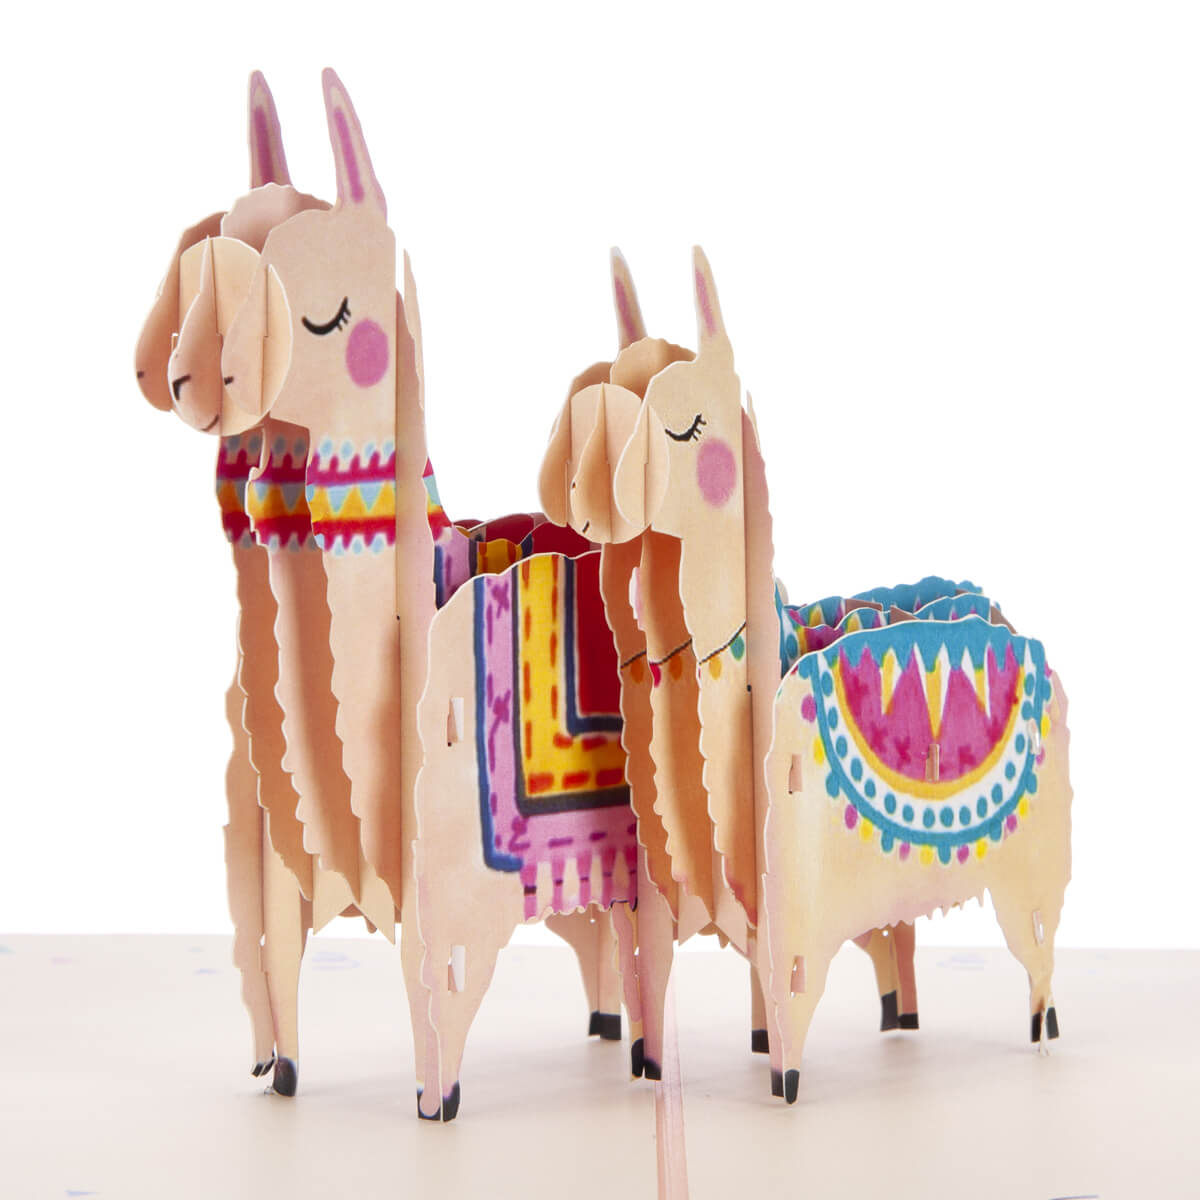 Llama Birthday Card - Llama Pop Up Card featuring 2 3D Llamas - Close Up Image